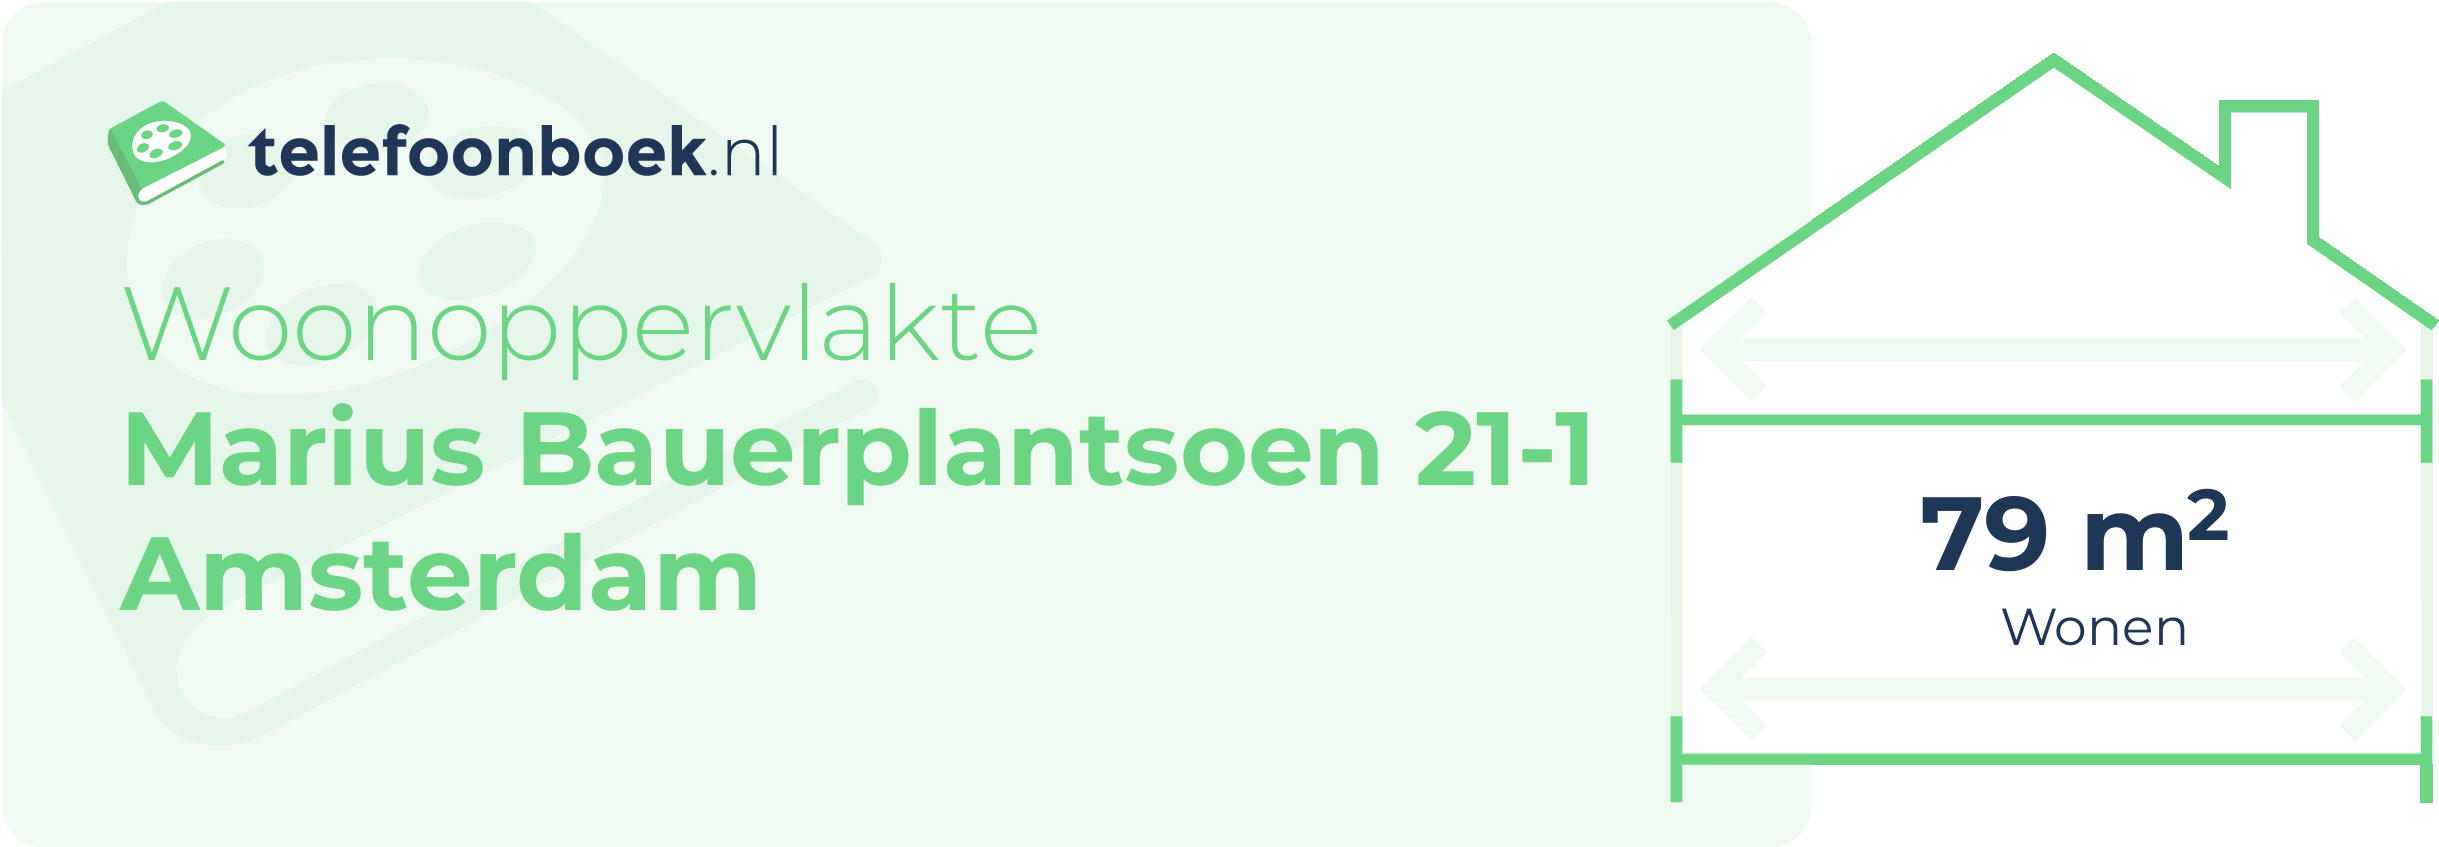 Woonoppervlakte Marius Bauerplantsoen 21-1 Amsterdam